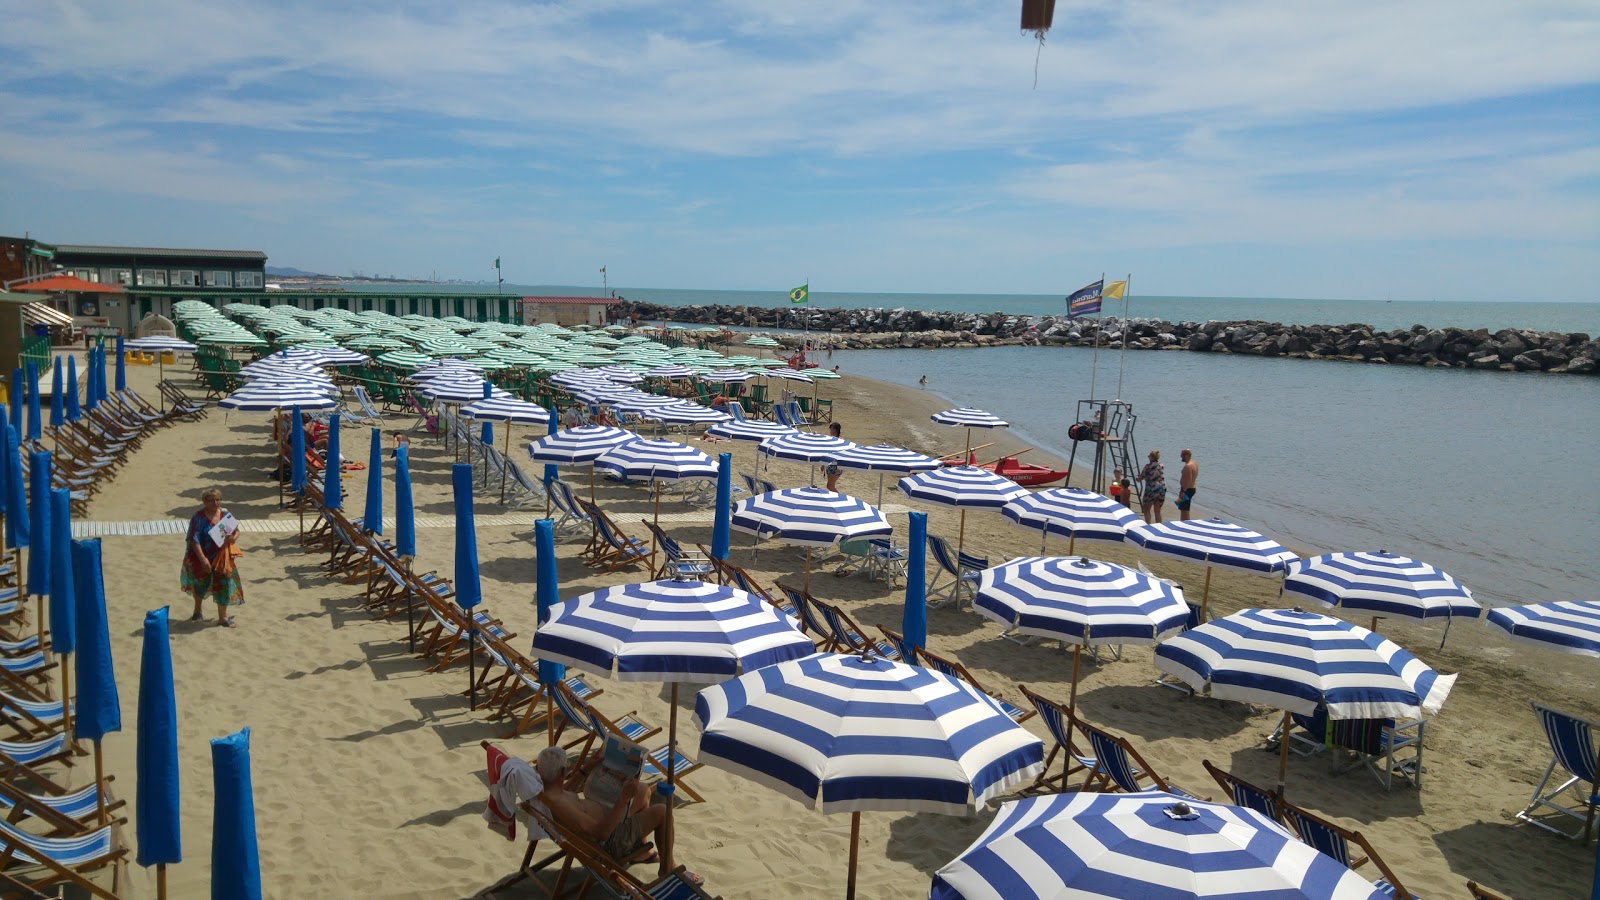 Photo of Sassi Bianchi II beach resort area